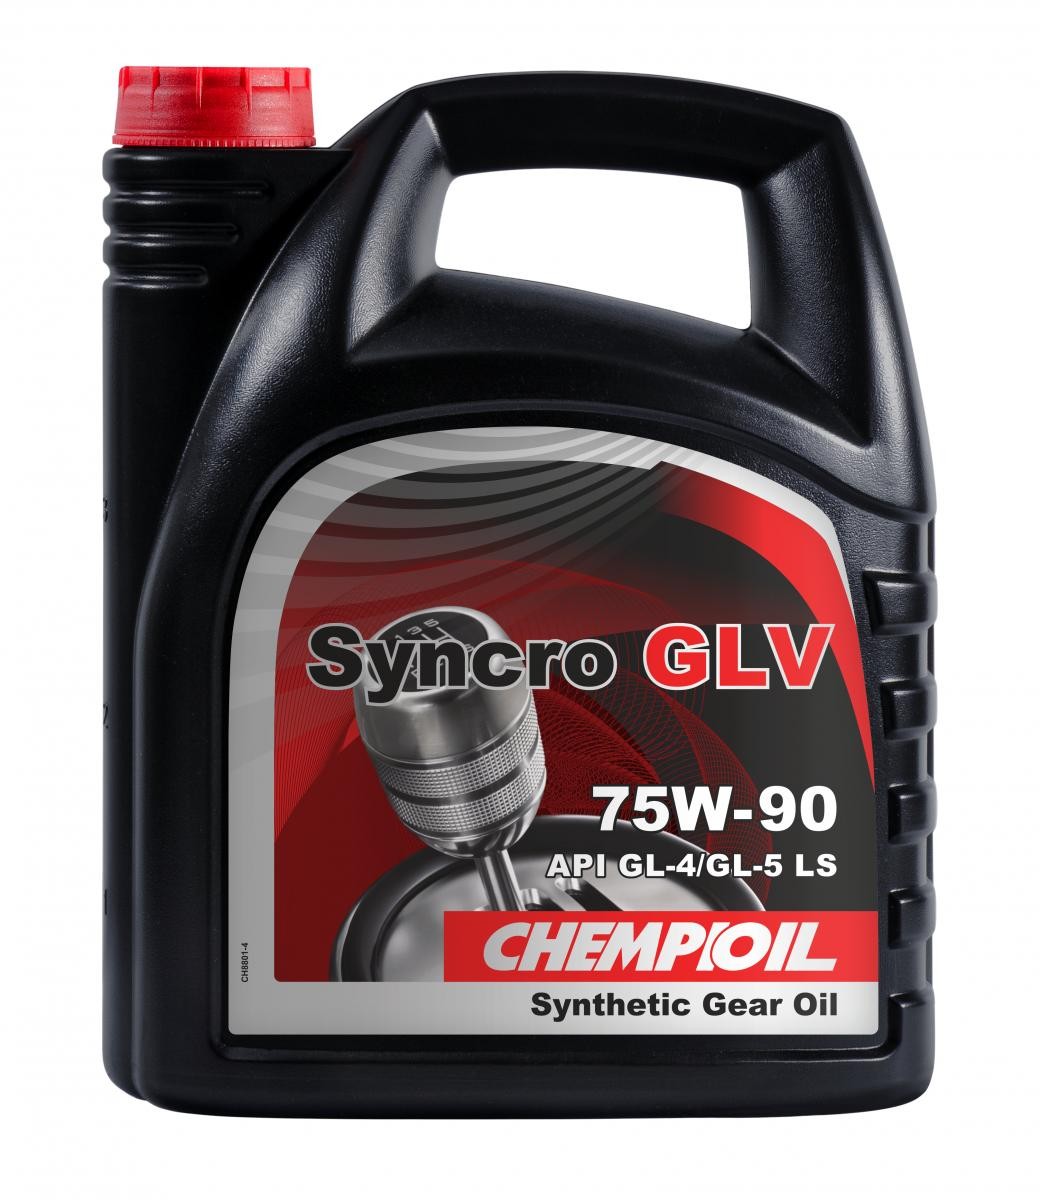 CHEMPIOIL Syncro, GLV GL-5 CH8801-4 Transmission fluid 75W-90, Capacity: 4l